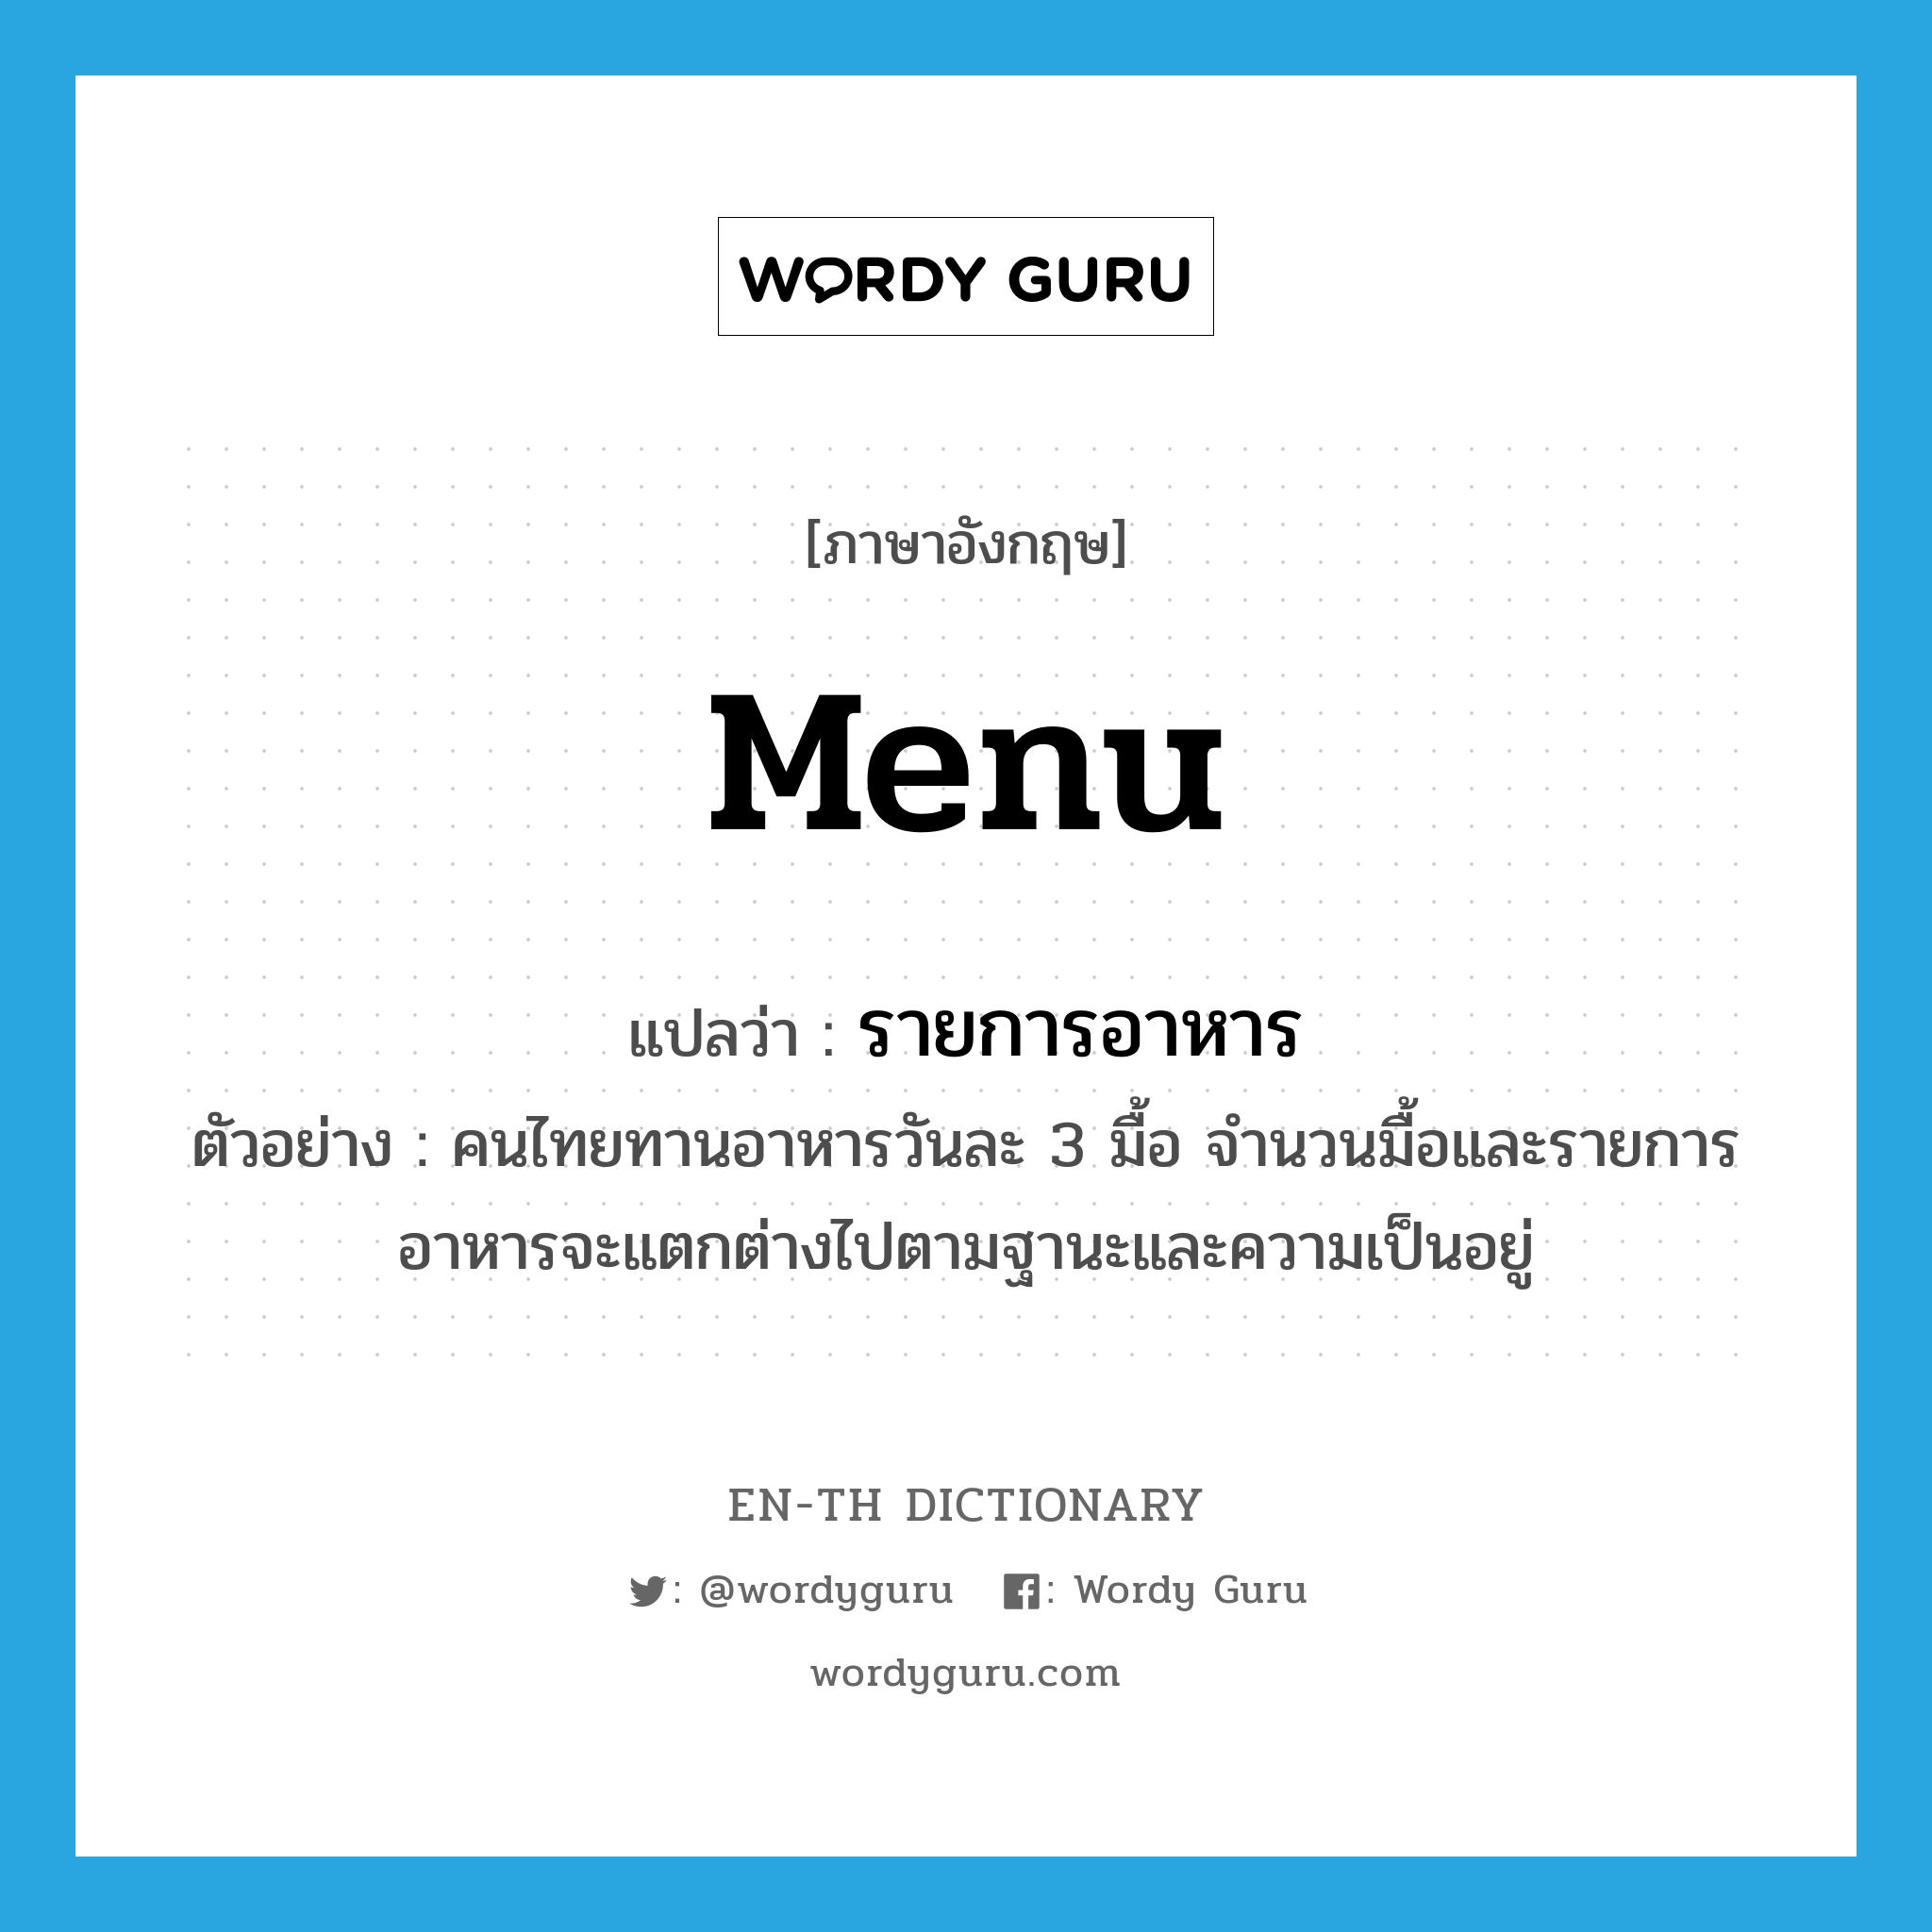 menu แปลว่า?, คำศัพท์ภาษาอังกฤษ menu แปลว่า รายการอาหาร ประเภท N ตัวอย่าง คนไทยทานอาหารวันละ 3 มื้อ จำนวนมื้อและรายการอาหารจะแตกต่างไปตามฐานะและความเป็นอยู่ หมวด N